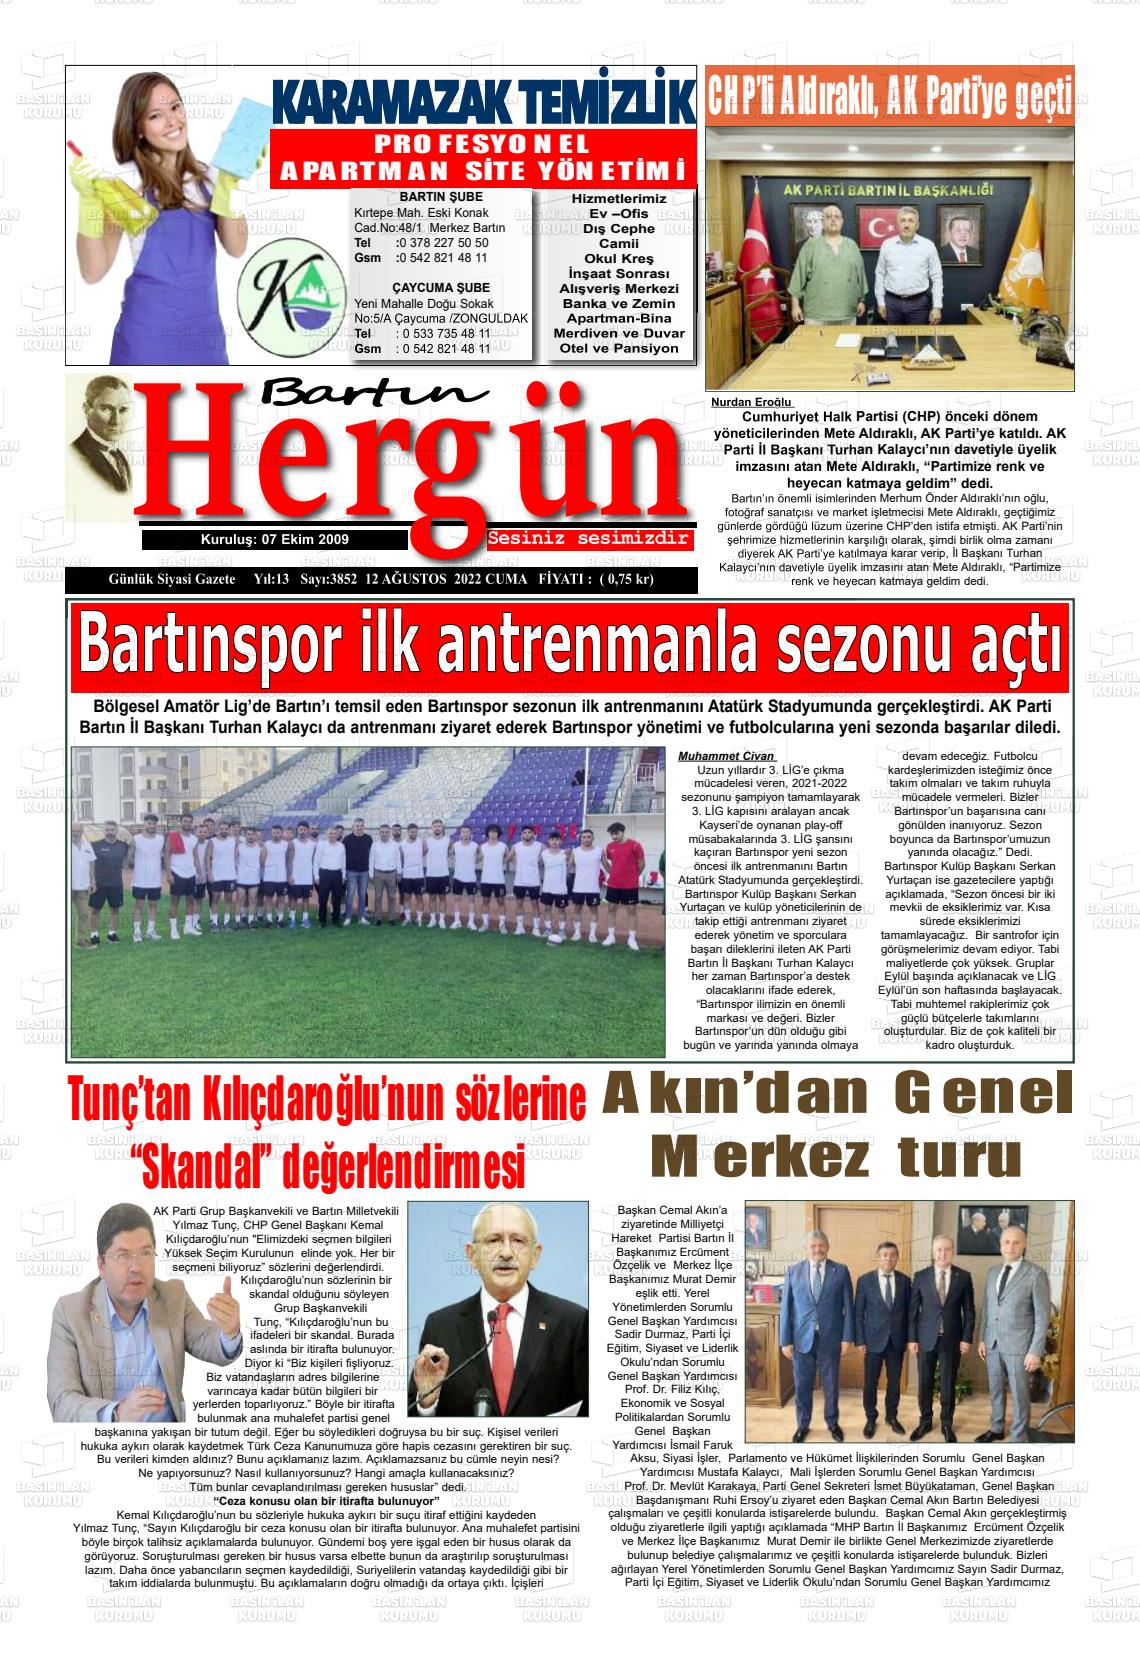 12 Ağustos 2022 Bartın Hergün Gazete Manşeti